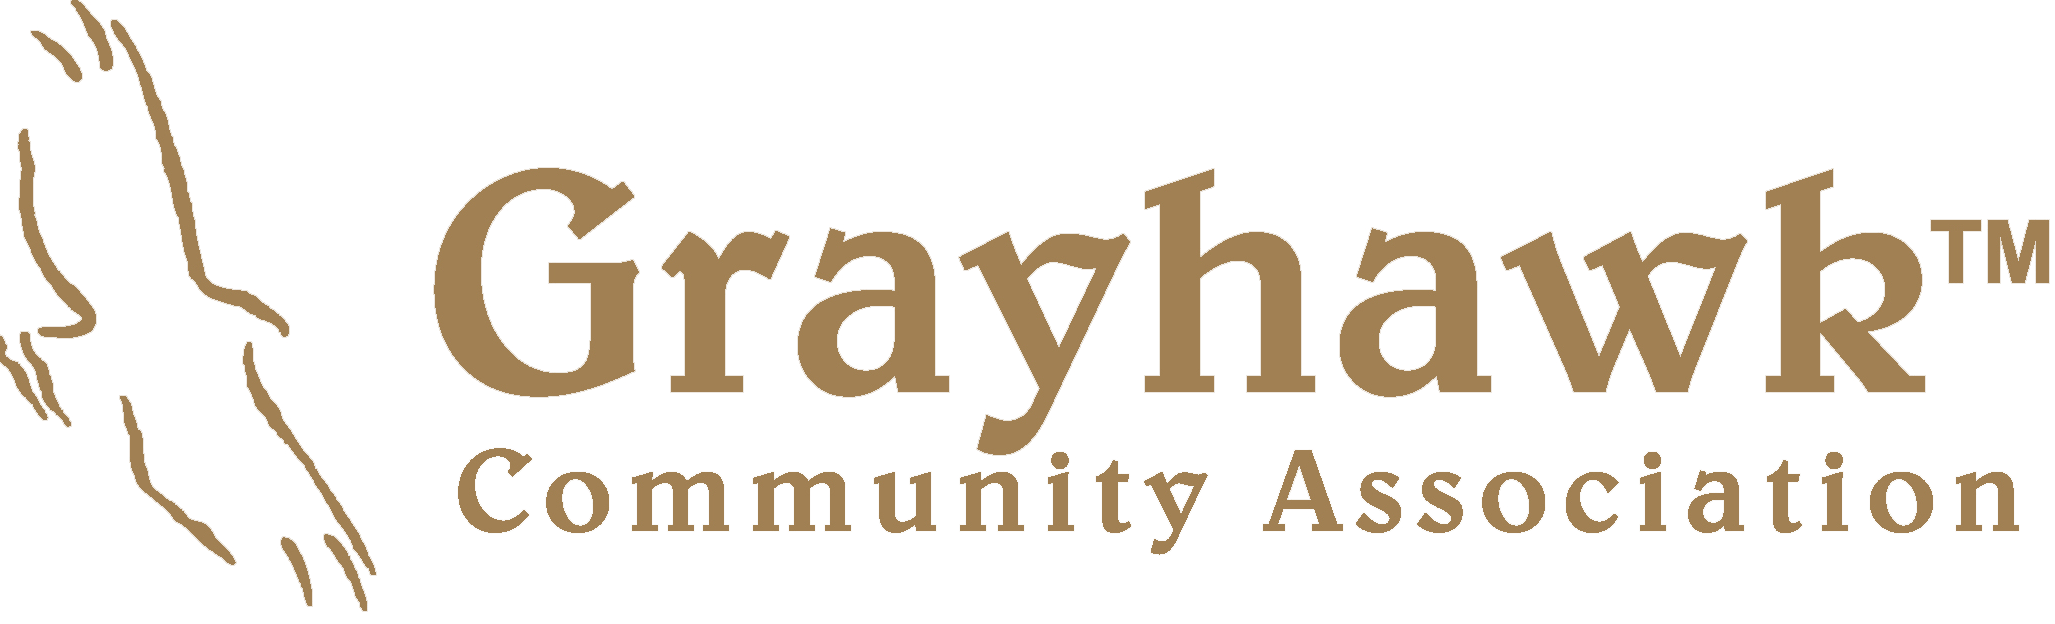 Grayhawk Community Association